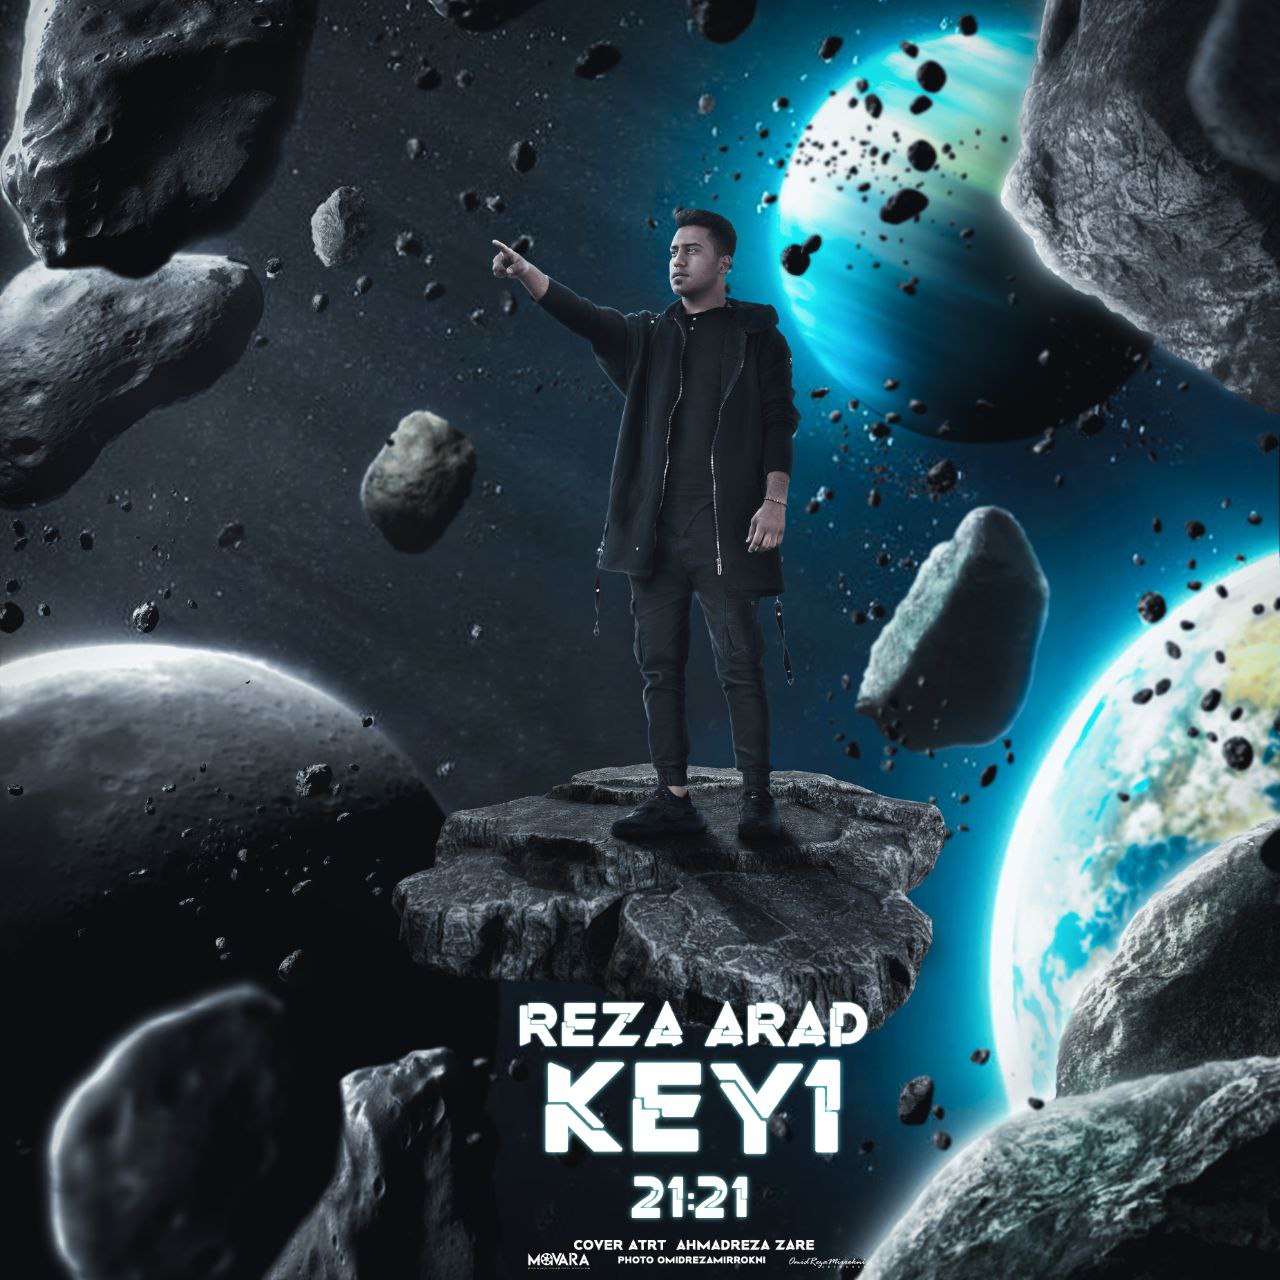 Reza Arad – Key 1